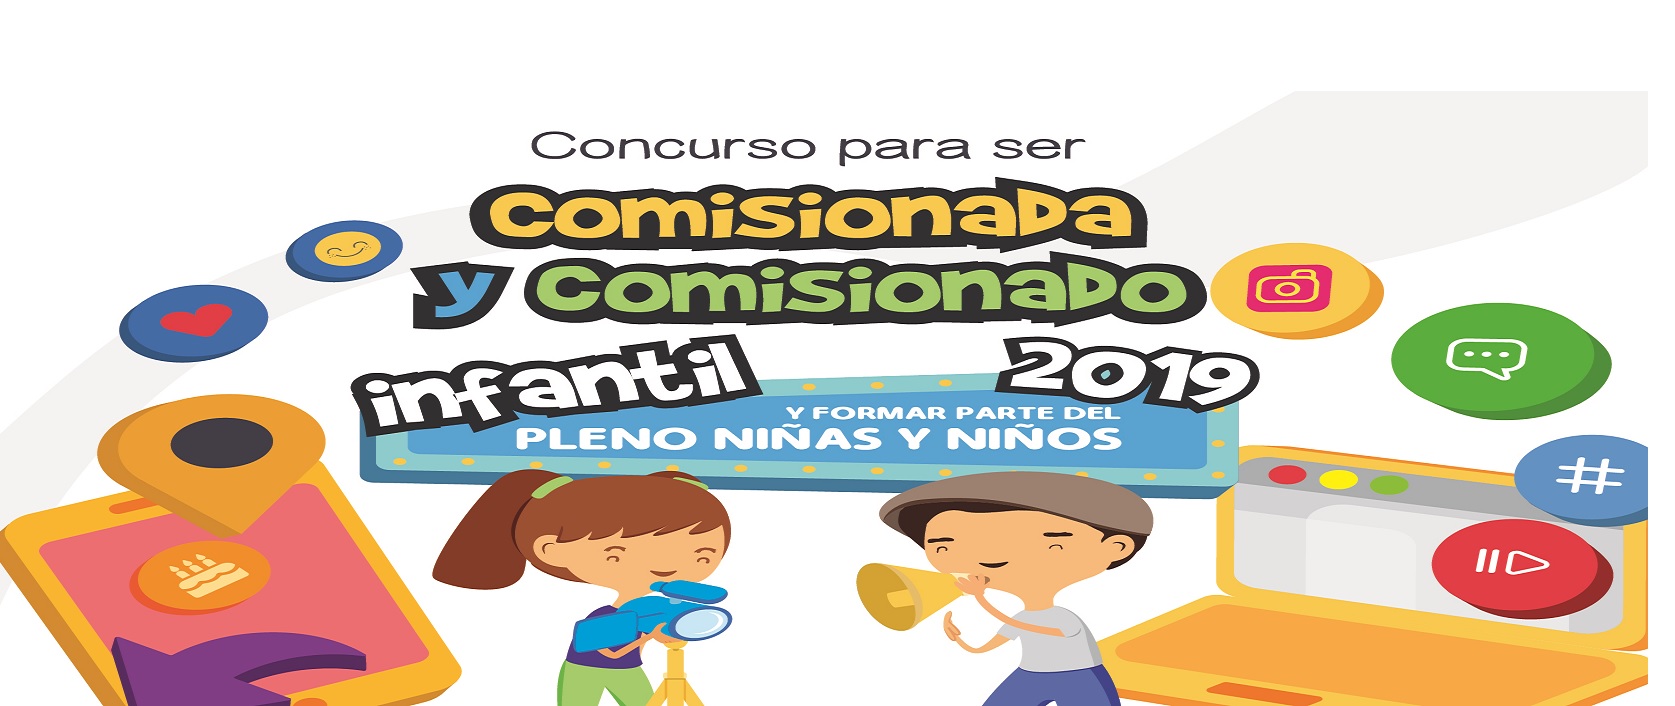 Concurso para ser Comisionada y Comisionado Infantil 2019